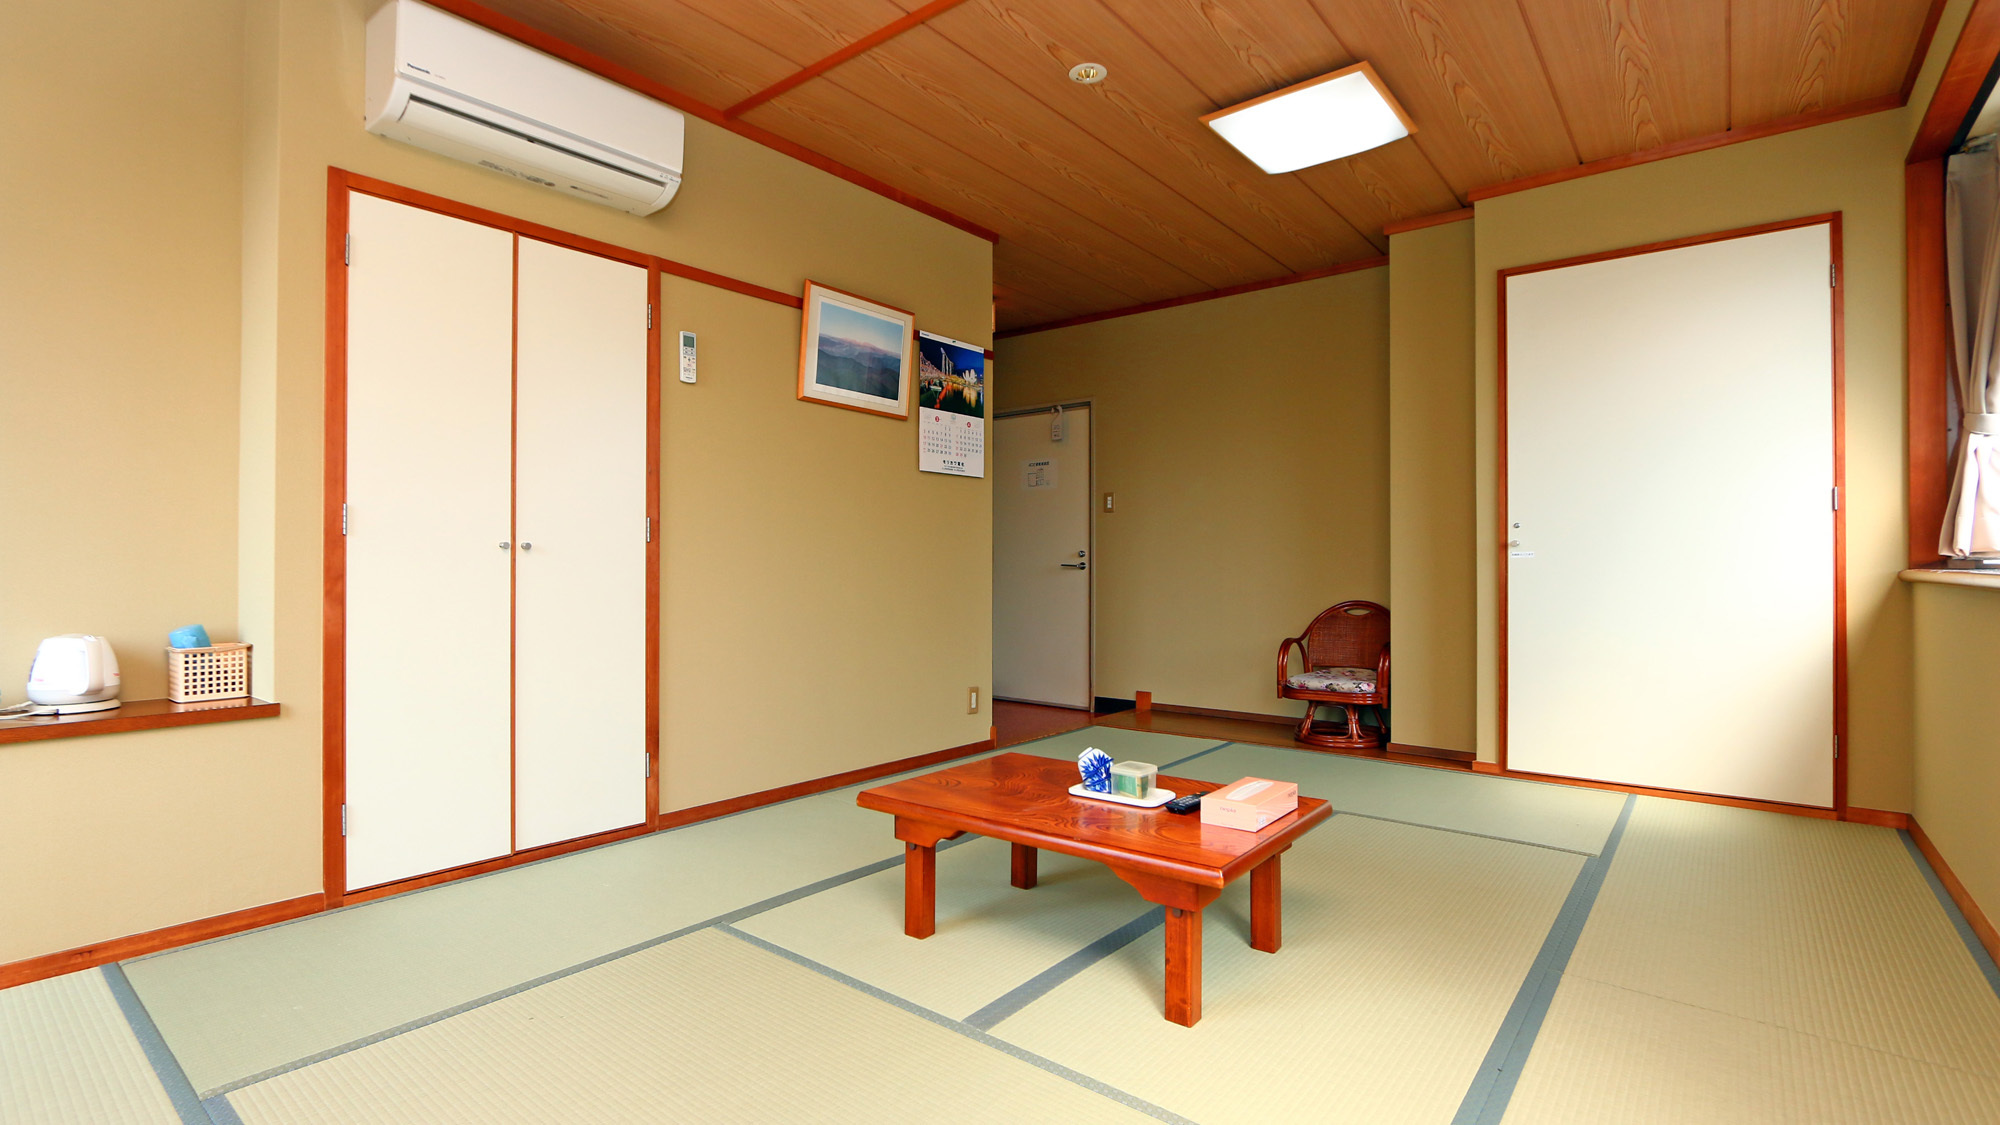 【ユニットバス付き和室】6〜10畳のお部屋です。Wi-Fi対応・グループやファミリーにも♪※布団はセ